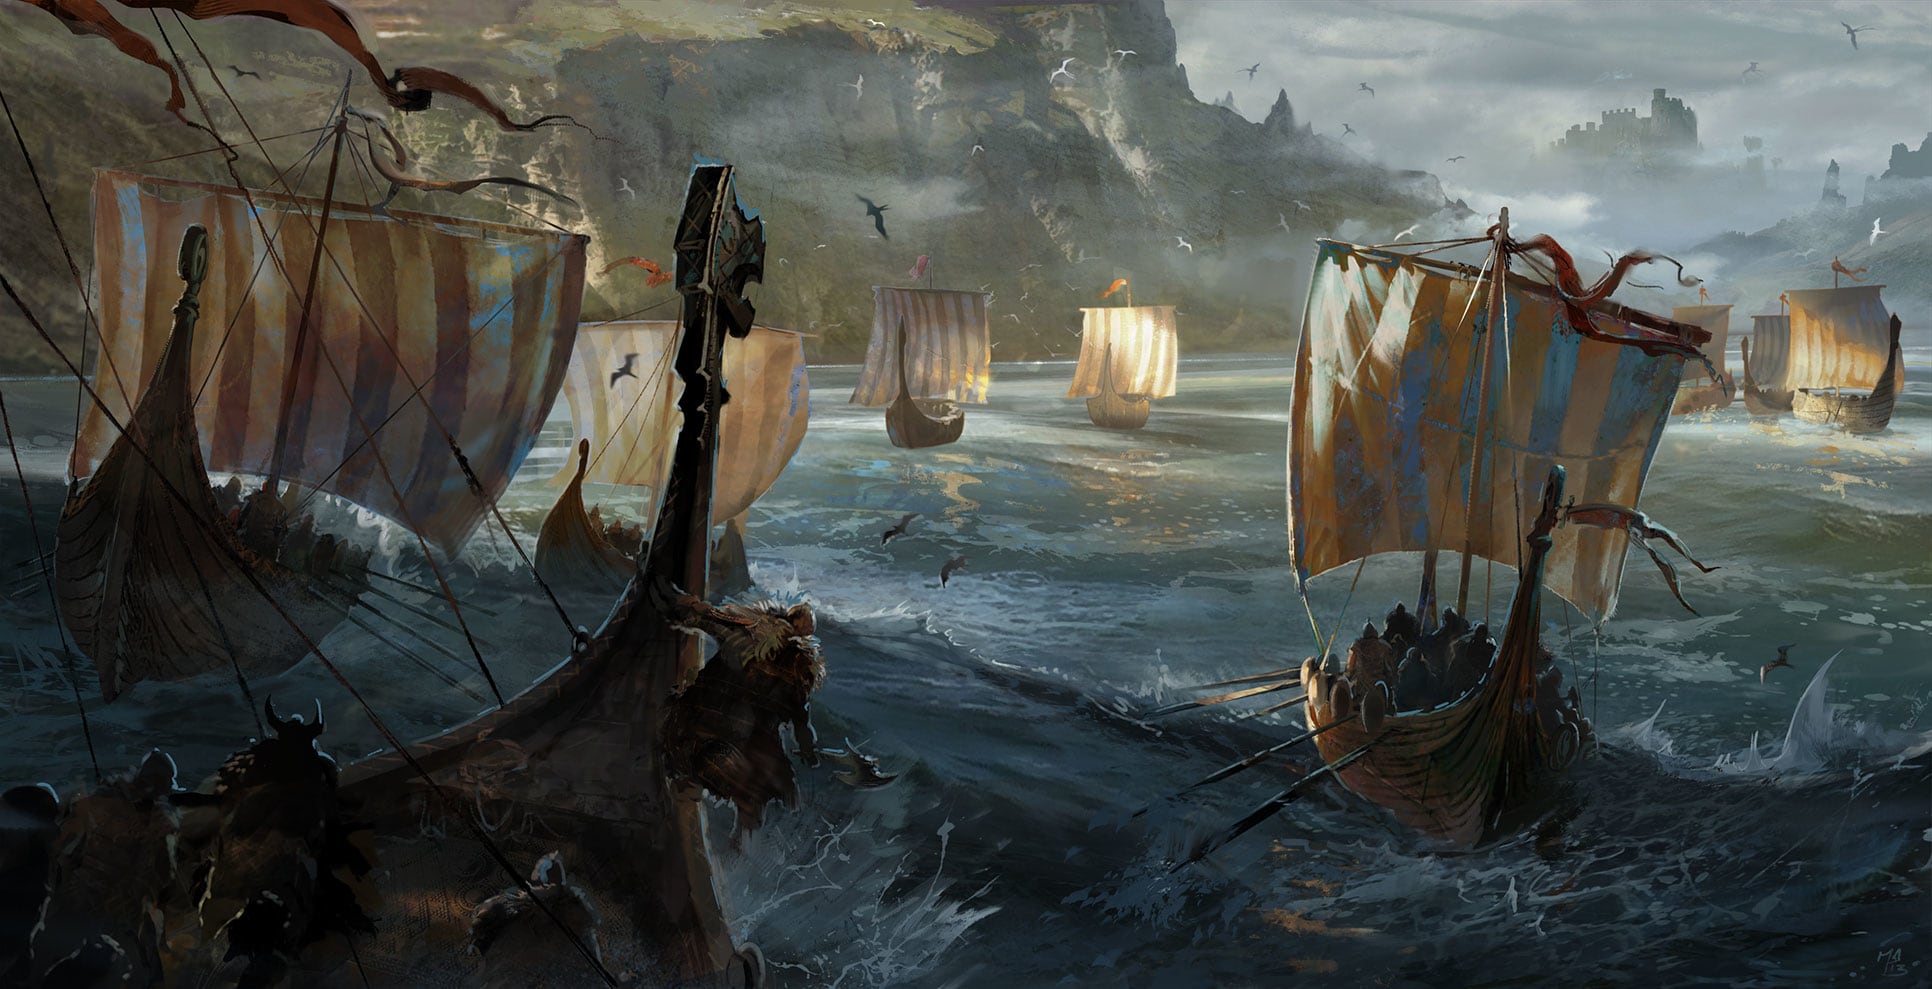 Ilustrasi kapal perang bangsa Viking